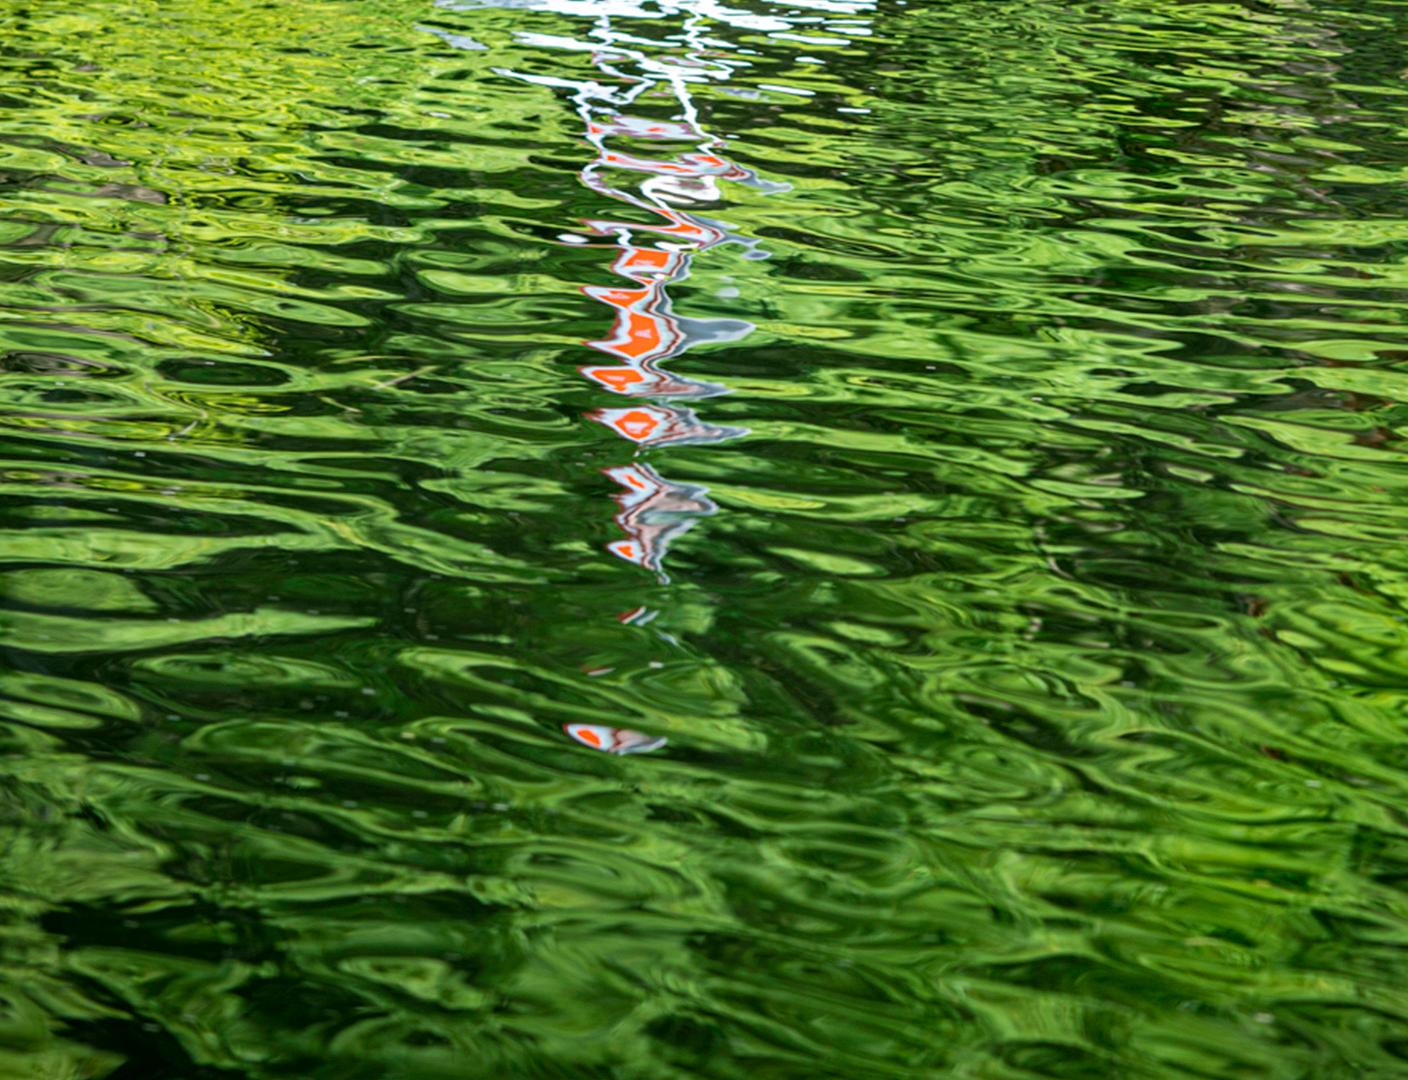 Das plätschernde Wasser wirkt wie ein Spiegel, in dem sich die sonnenbeschienene, üppig grüne Landschaft und eine weiß-rote Boje auf diesem friedlichen Foto von Shani Mootoo widerspiegeln. Die Aufnahme wurde von oben gemacht - eine Nahaufnahme, die